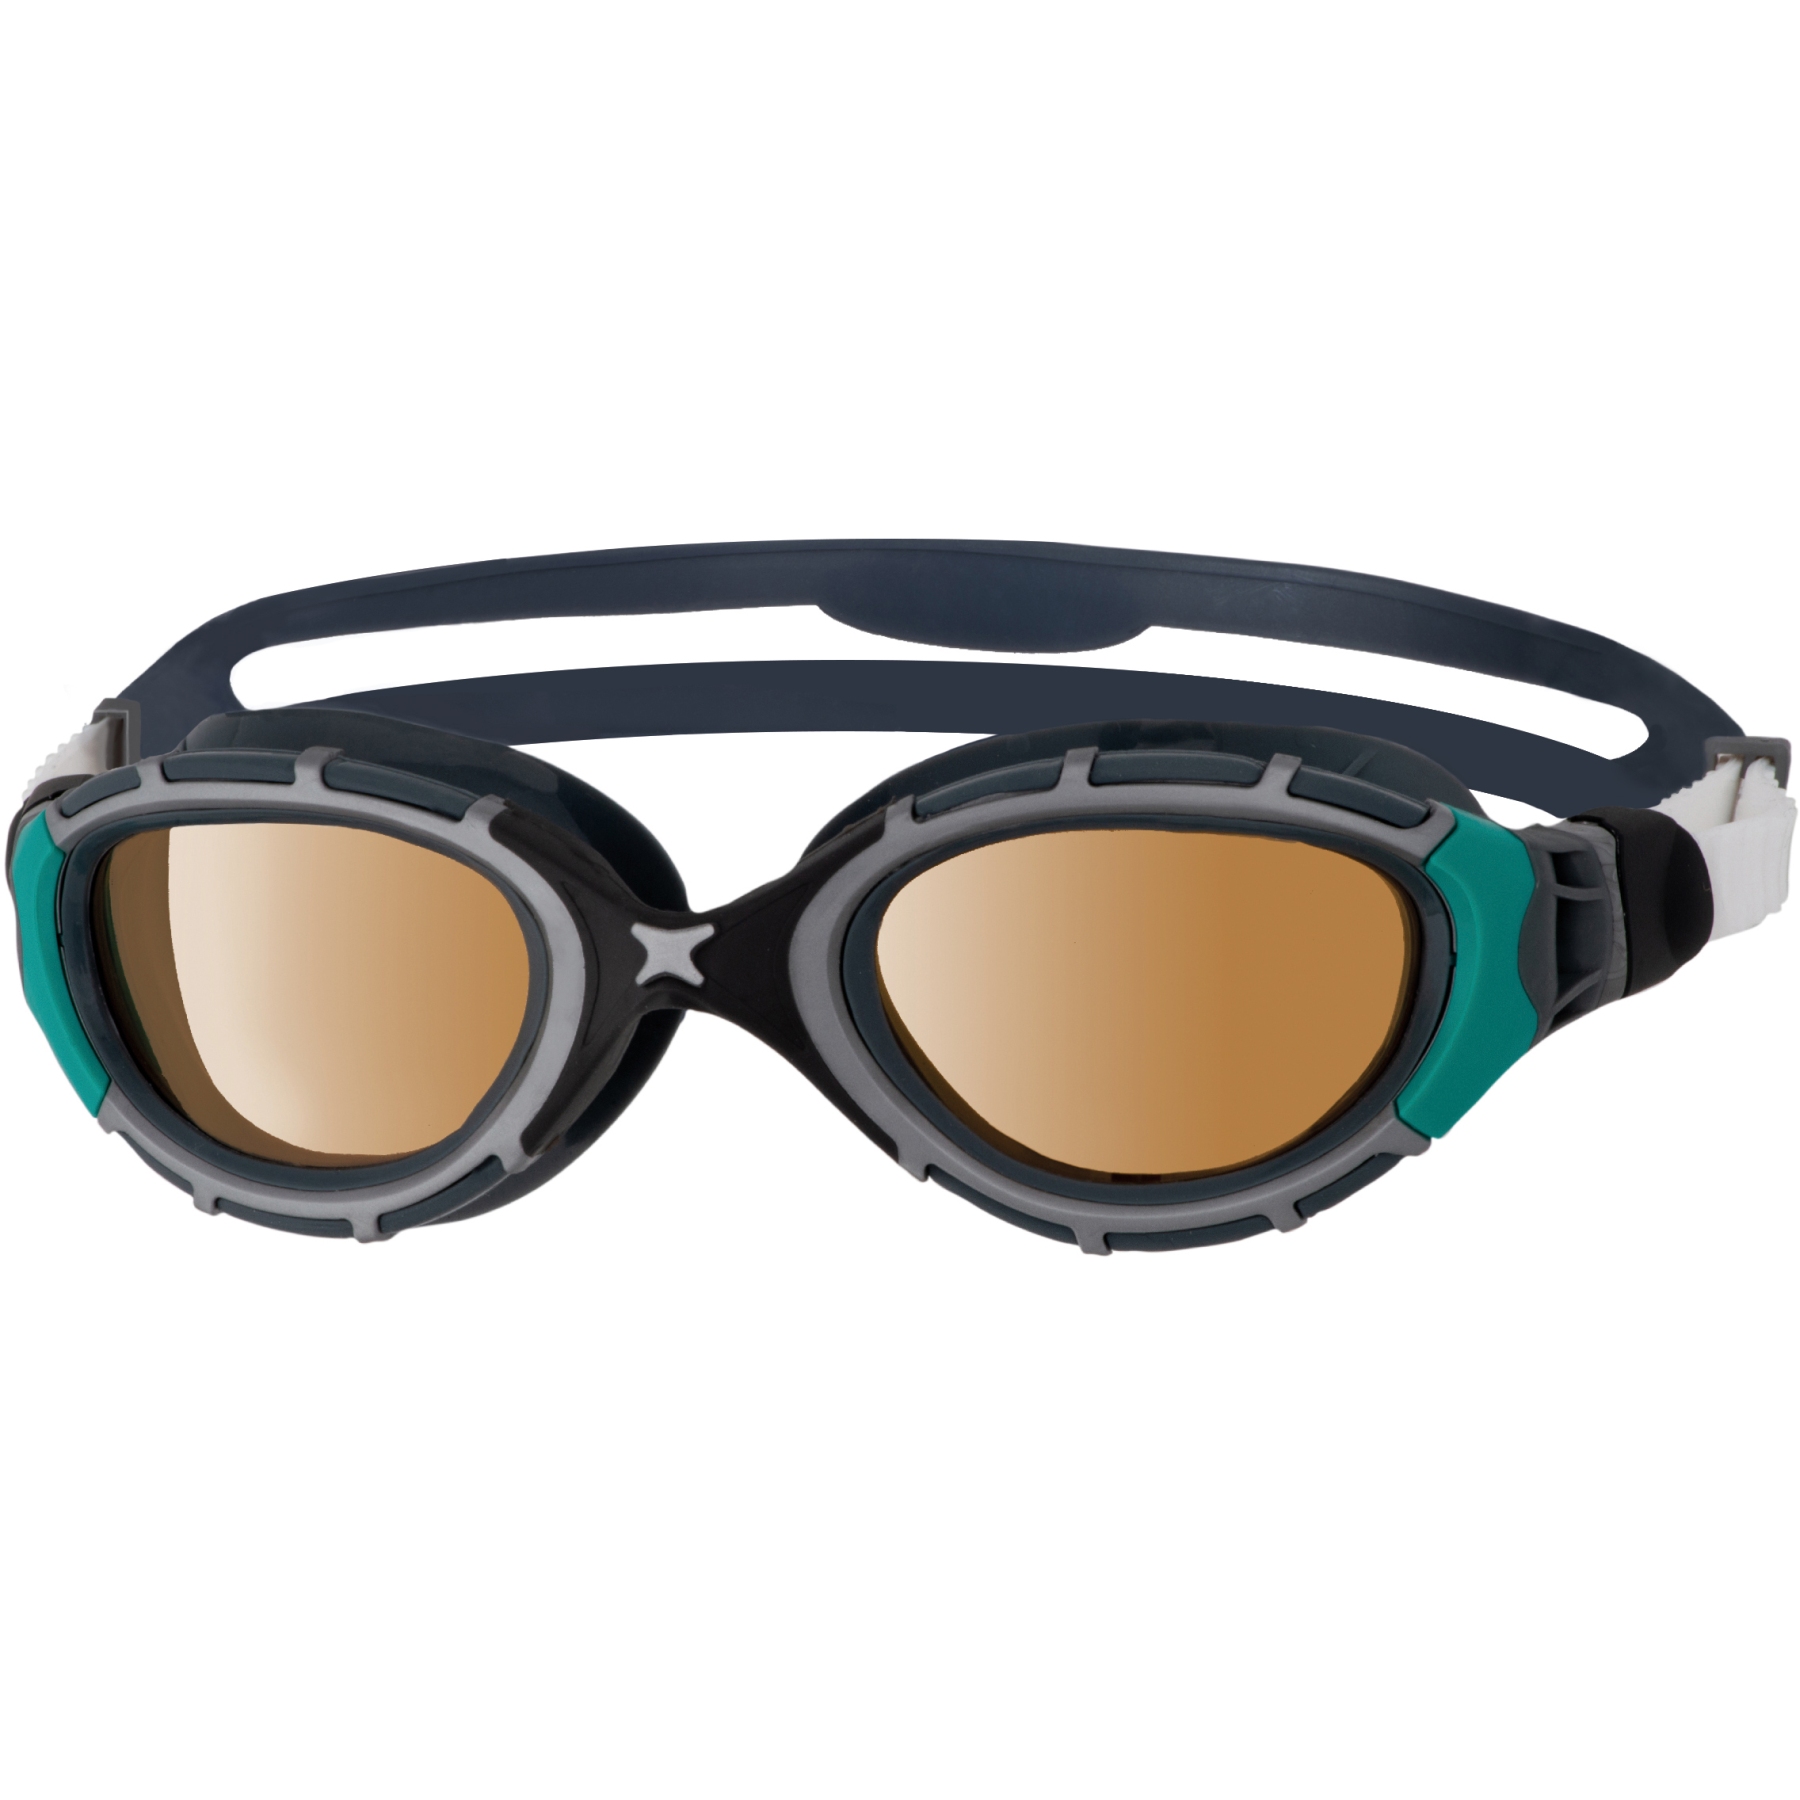 Picture of Zoggs Predator Flex Swimming Goggles - Polarized Ultra Copper Lenses - Small Fit - Black/Green